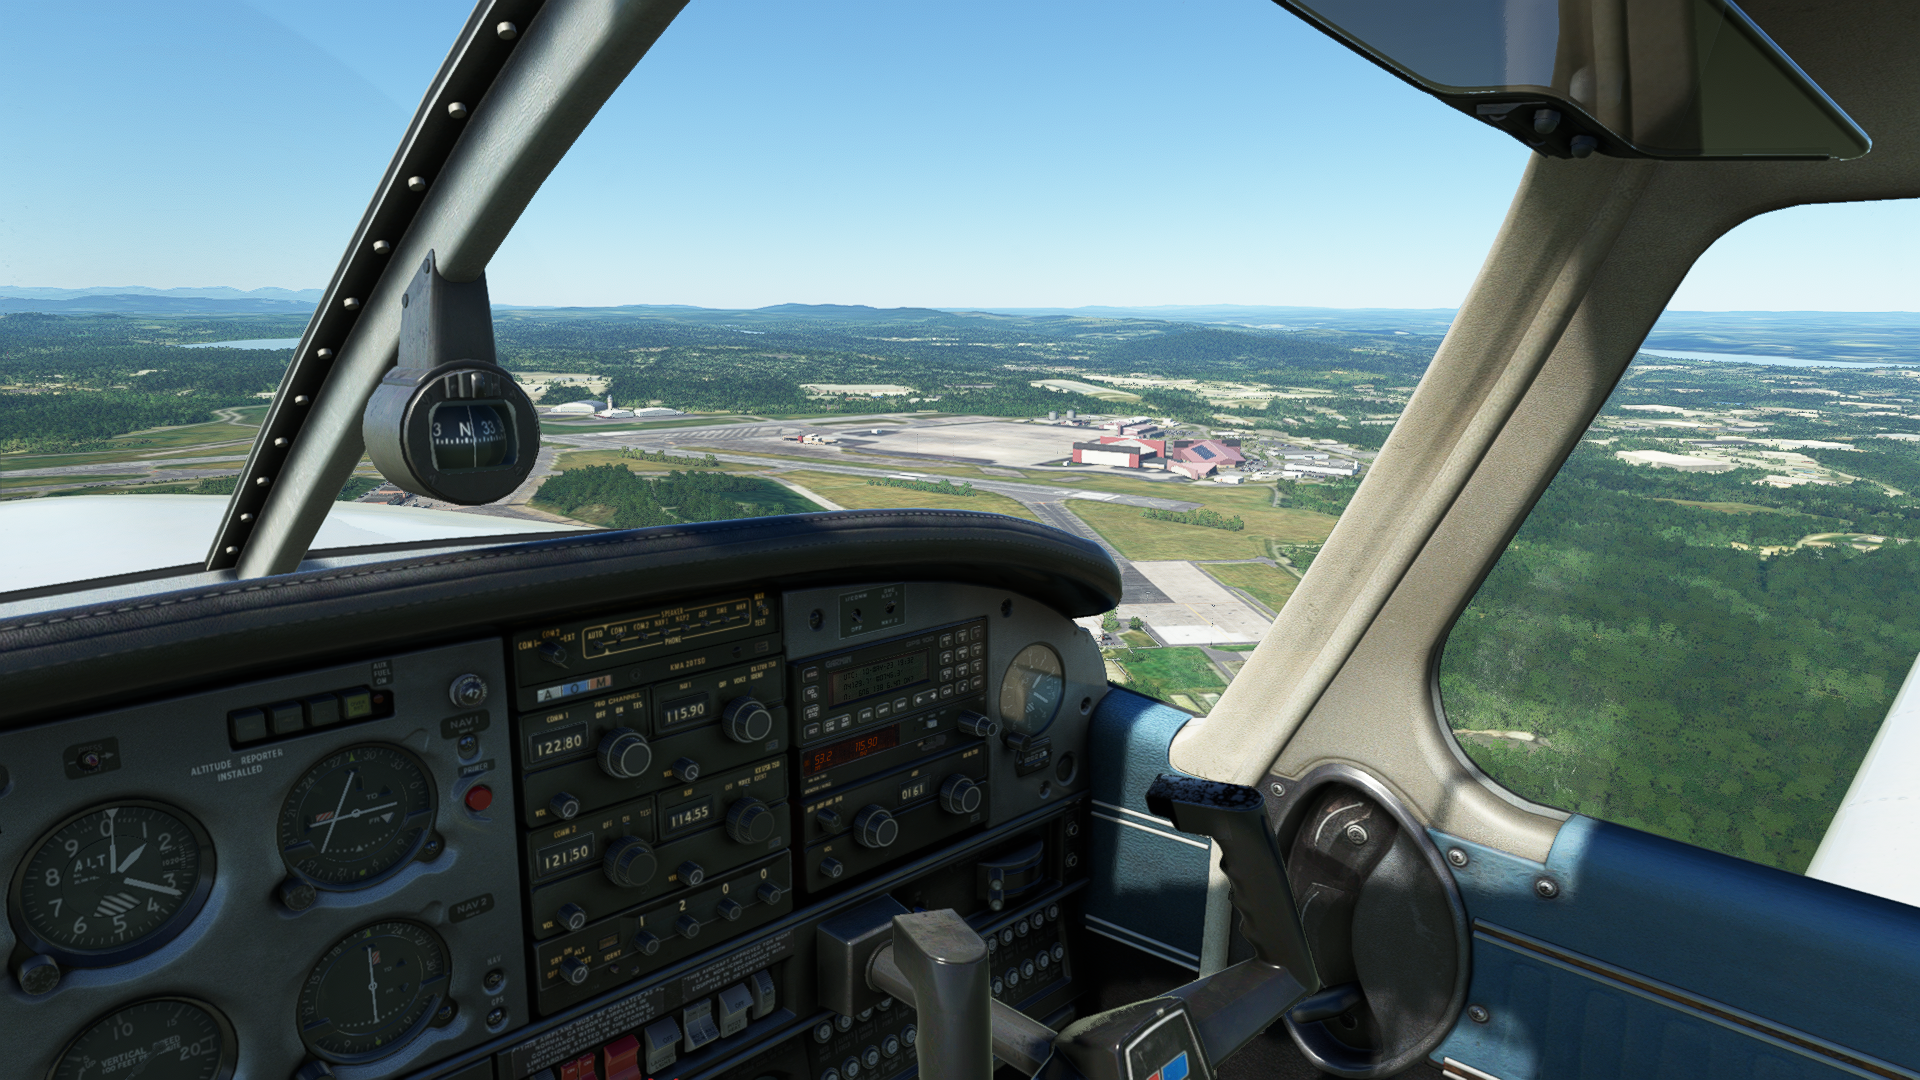 Light aircraft cockpit in flight looking across an airifeld